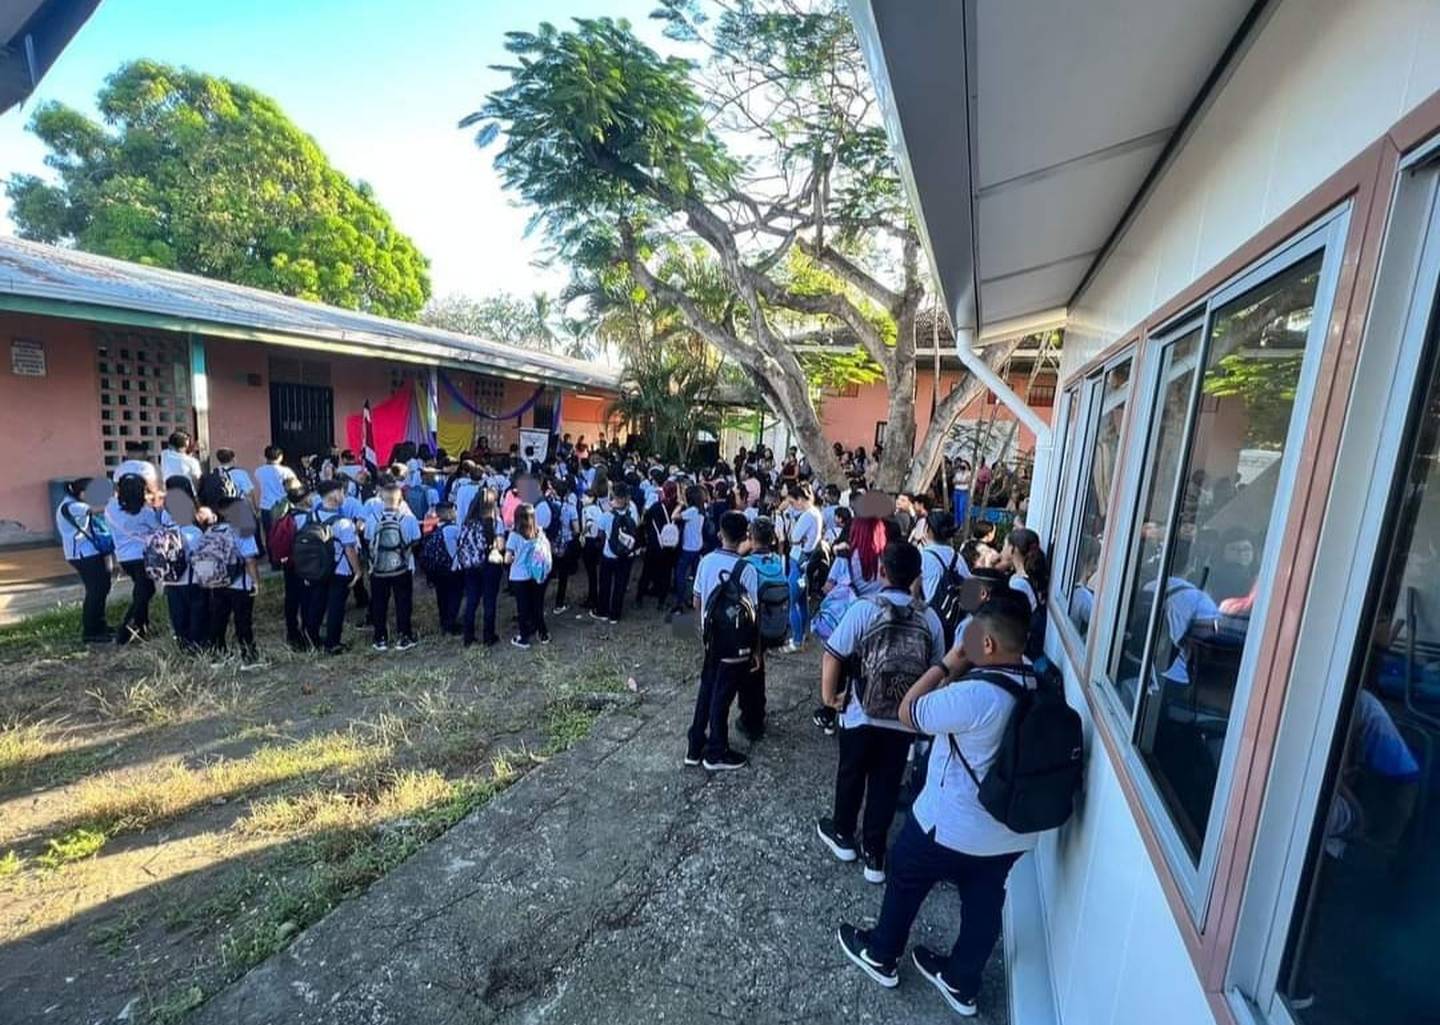 Un estudiante del Liceo de Chacarita, Puntarenas, le lanzó cloro a una compañera en los ojos. La muchacha perdió la vista en uno de ellos.